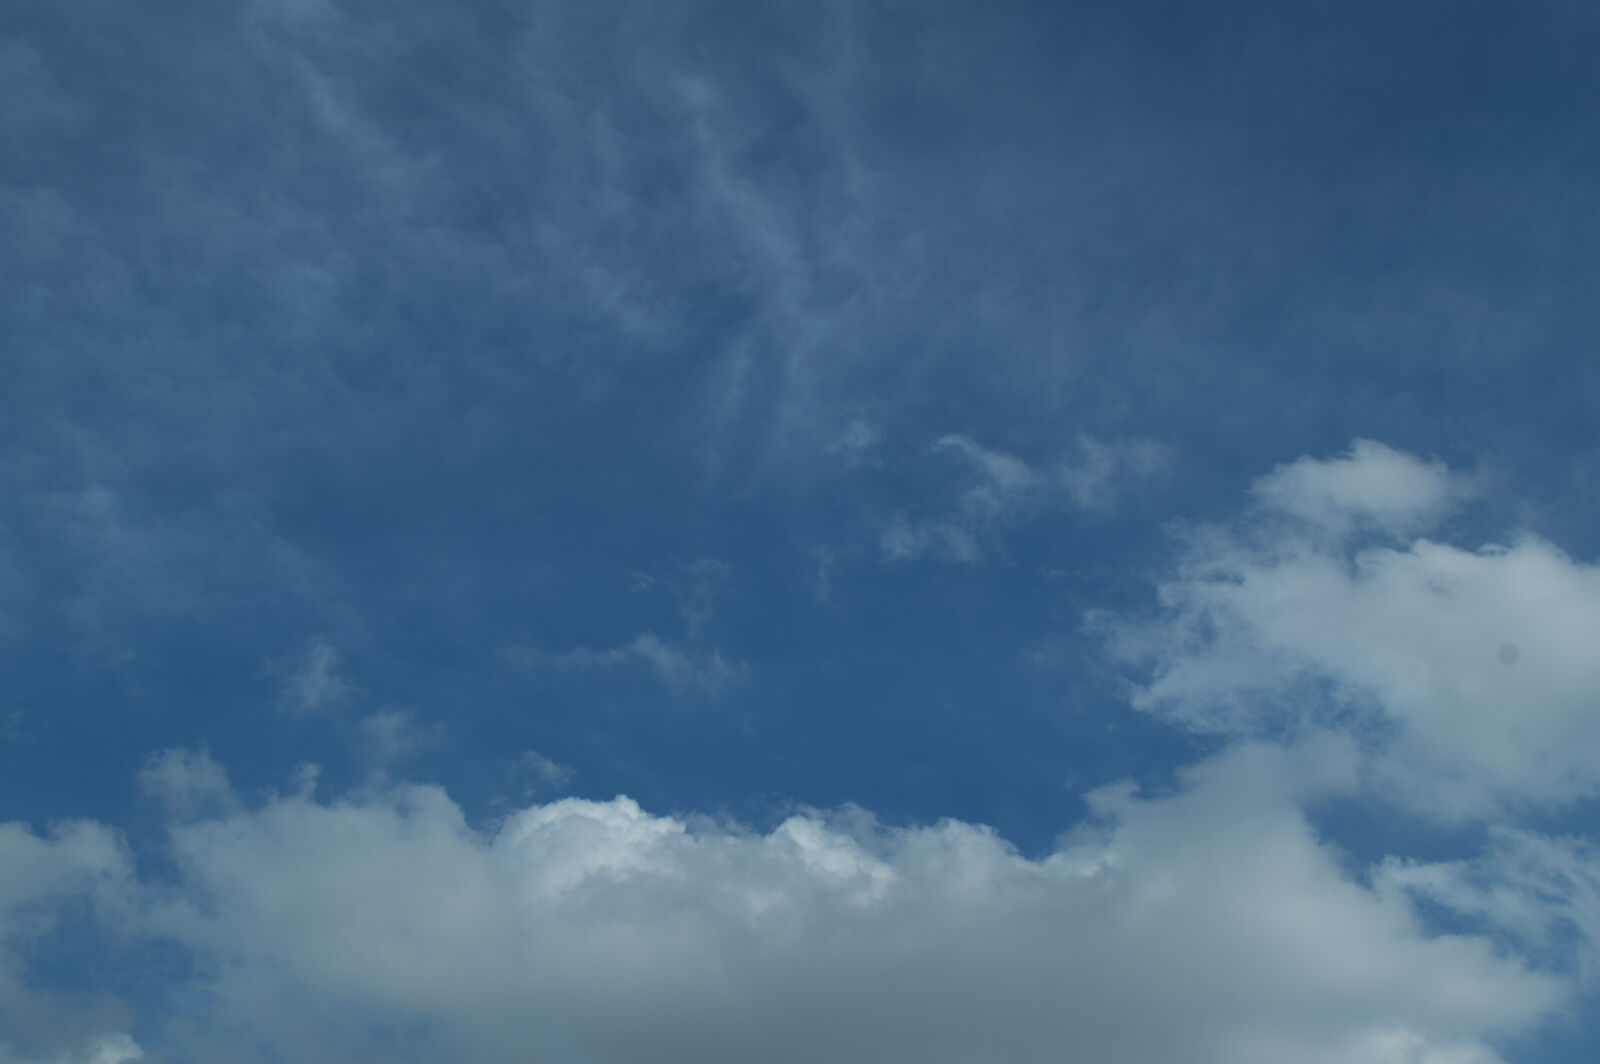 Nikon AF-S DX Nikkor 18-55mm F3.5-5.6G VR sample photo. Background, blue, cloud, dark photography